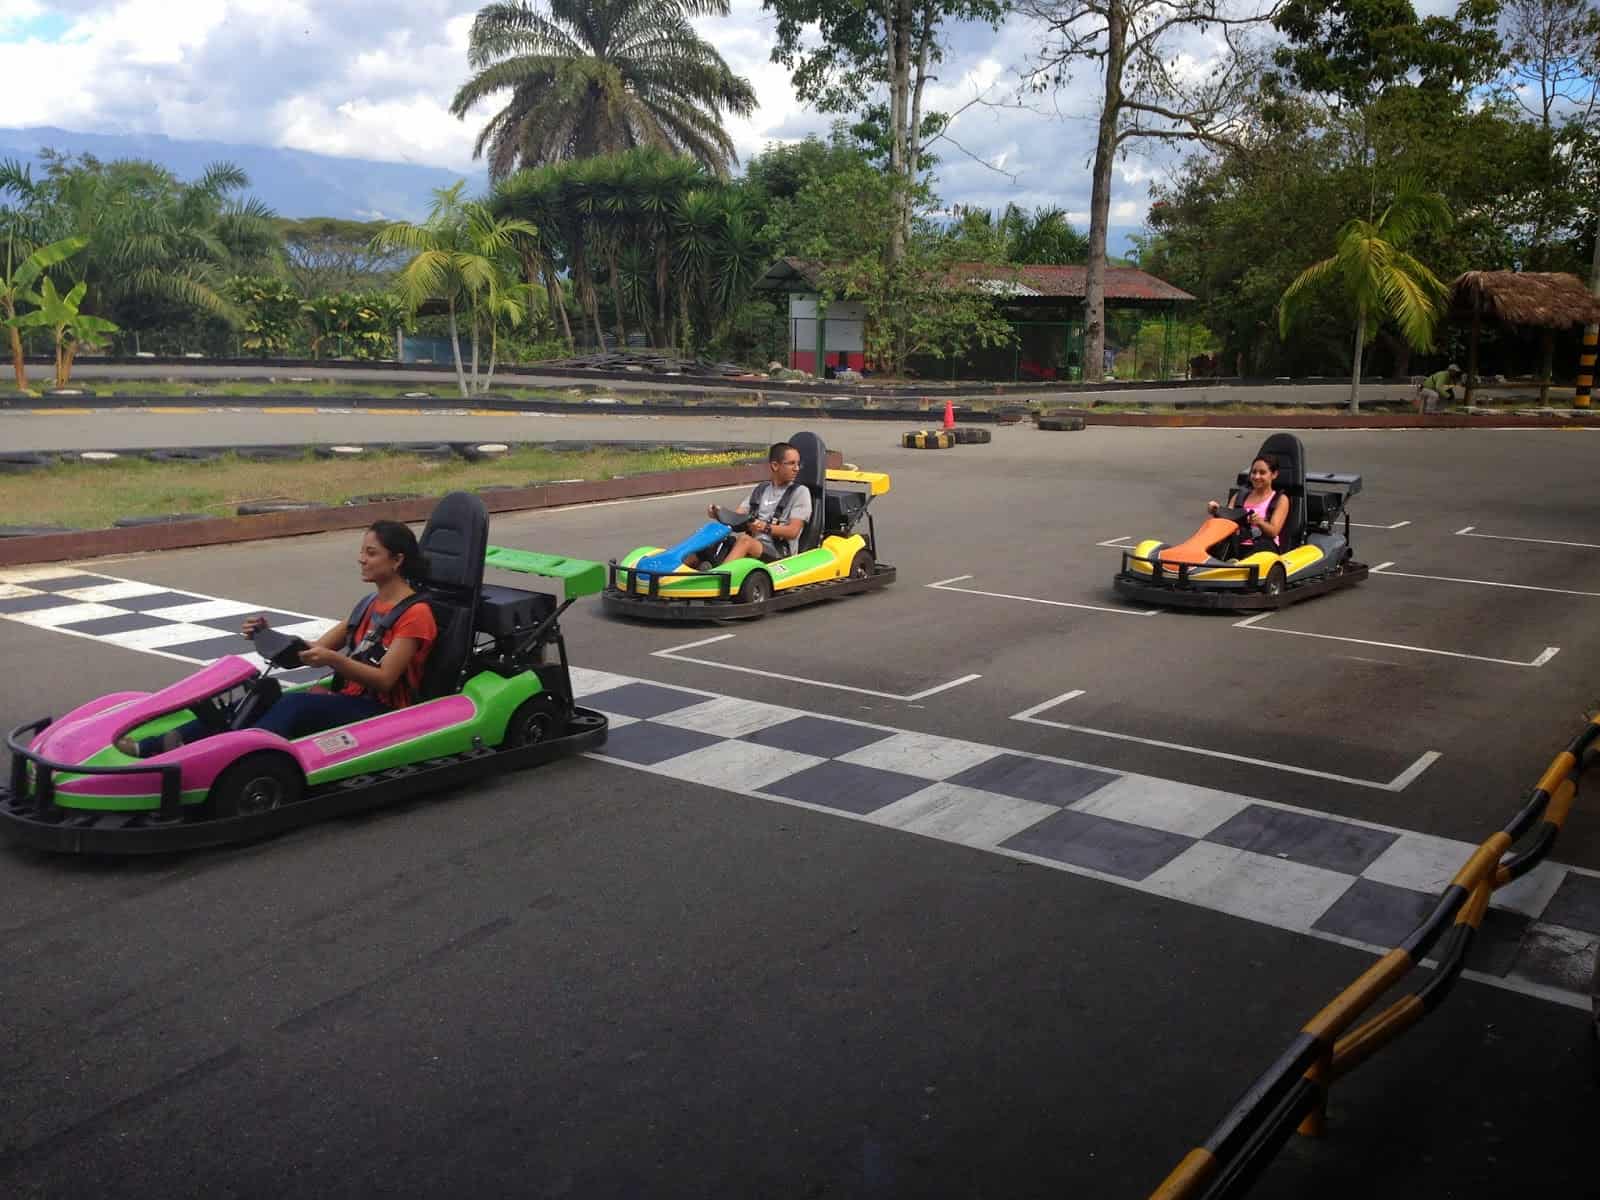 Go kart racing at Parque Nacional del Café in Quindío, Colombia